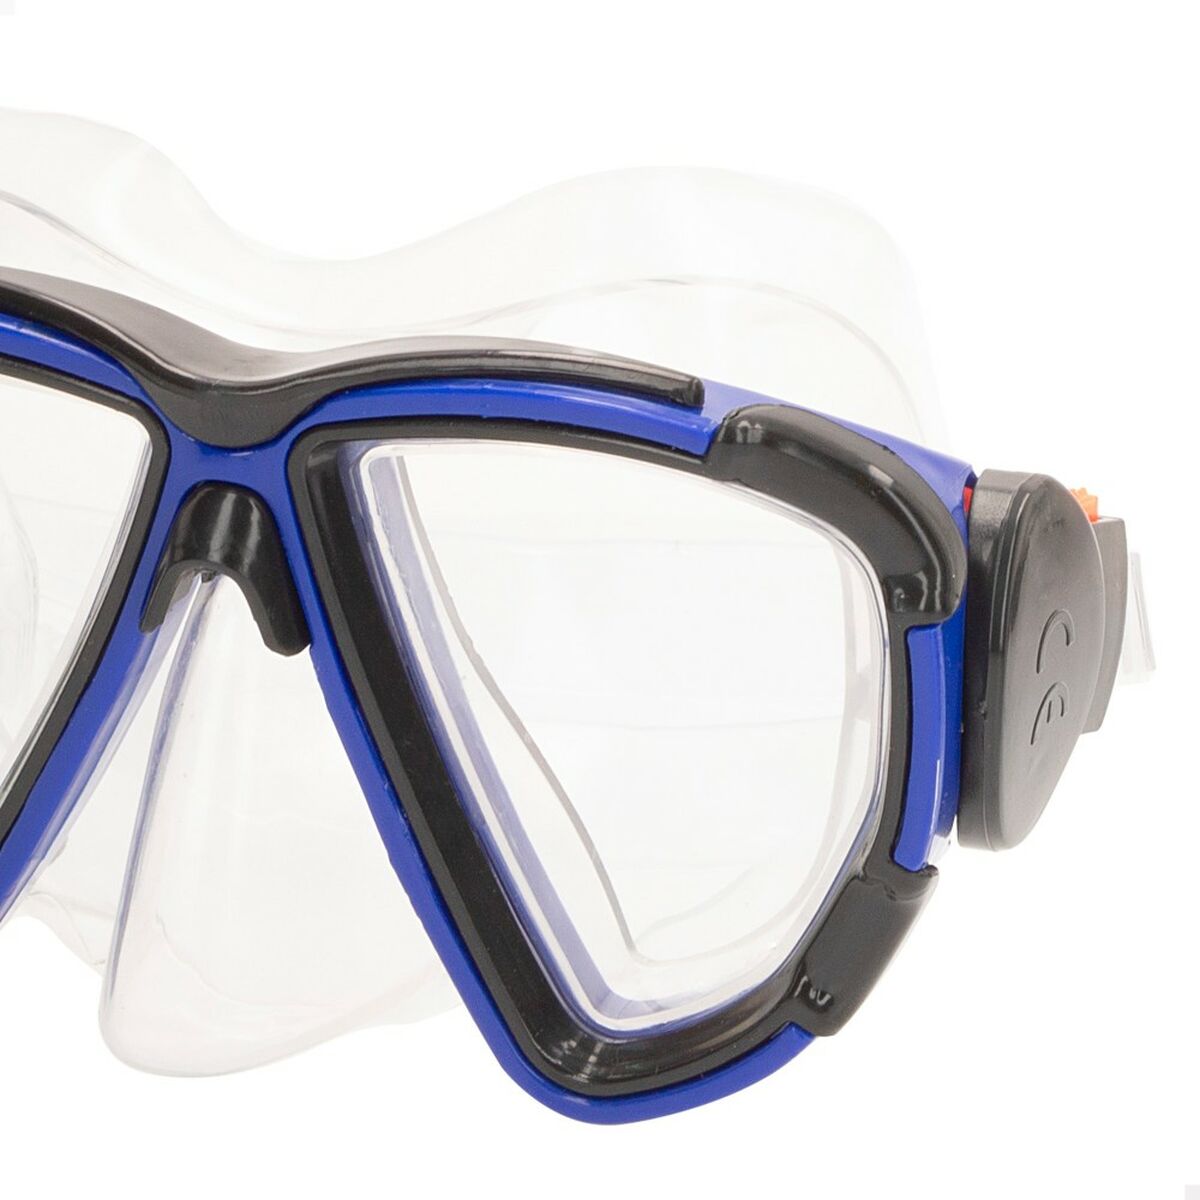 Γυαλιά Καταδύσεων με Σωλήνα Colorbaby Aqua Sport Ενήλικες (x6)